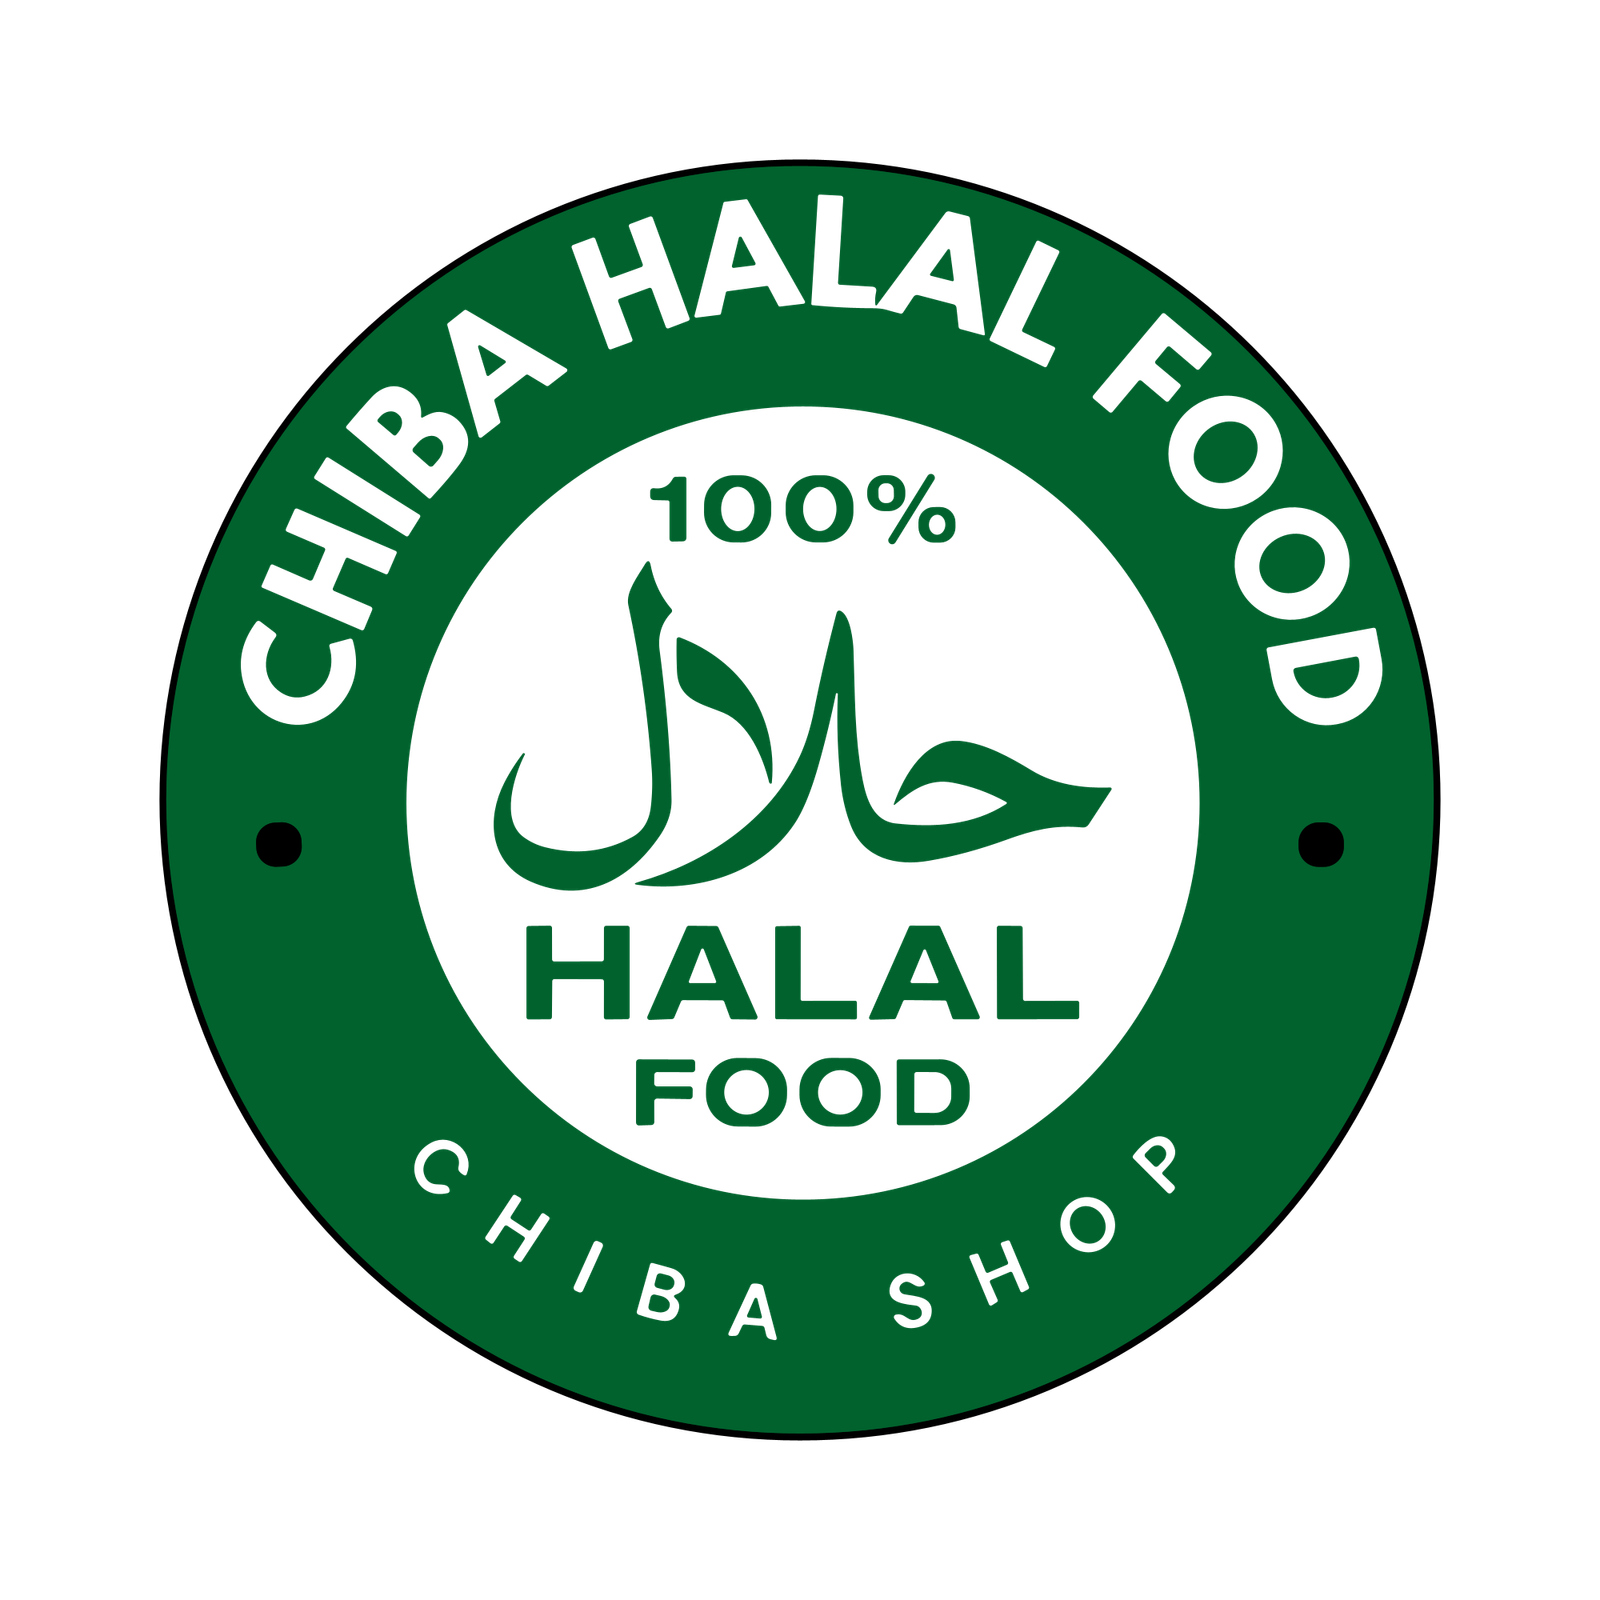 Chiba Halal Food